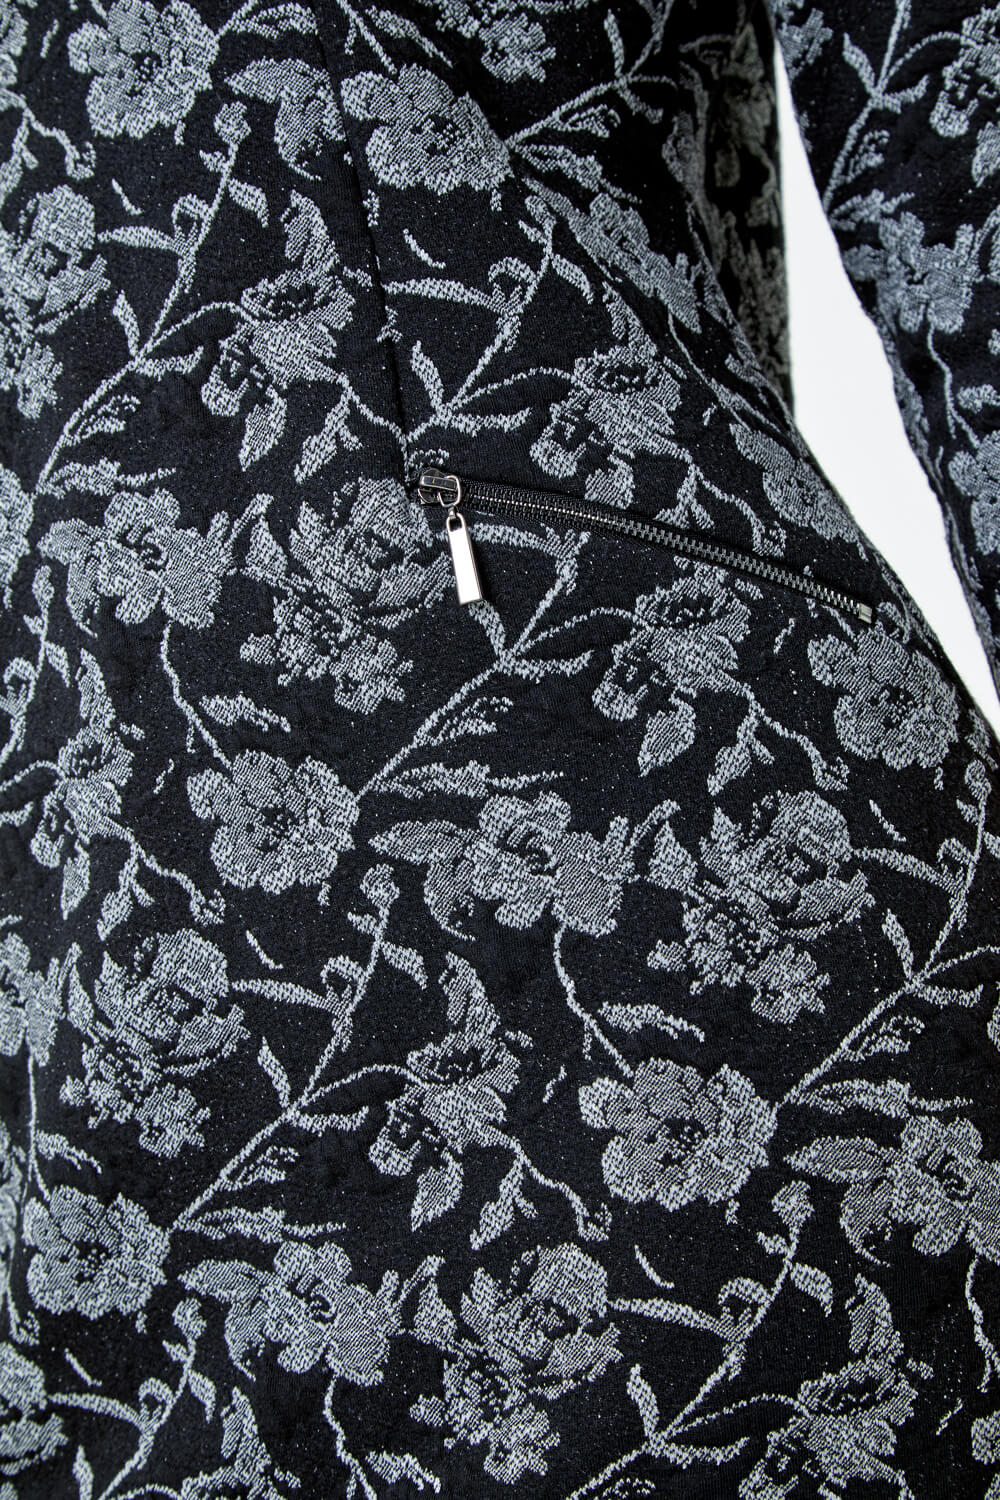 Black Cotton Blend Floral Shift Stretch Dress, Image 5 of 5